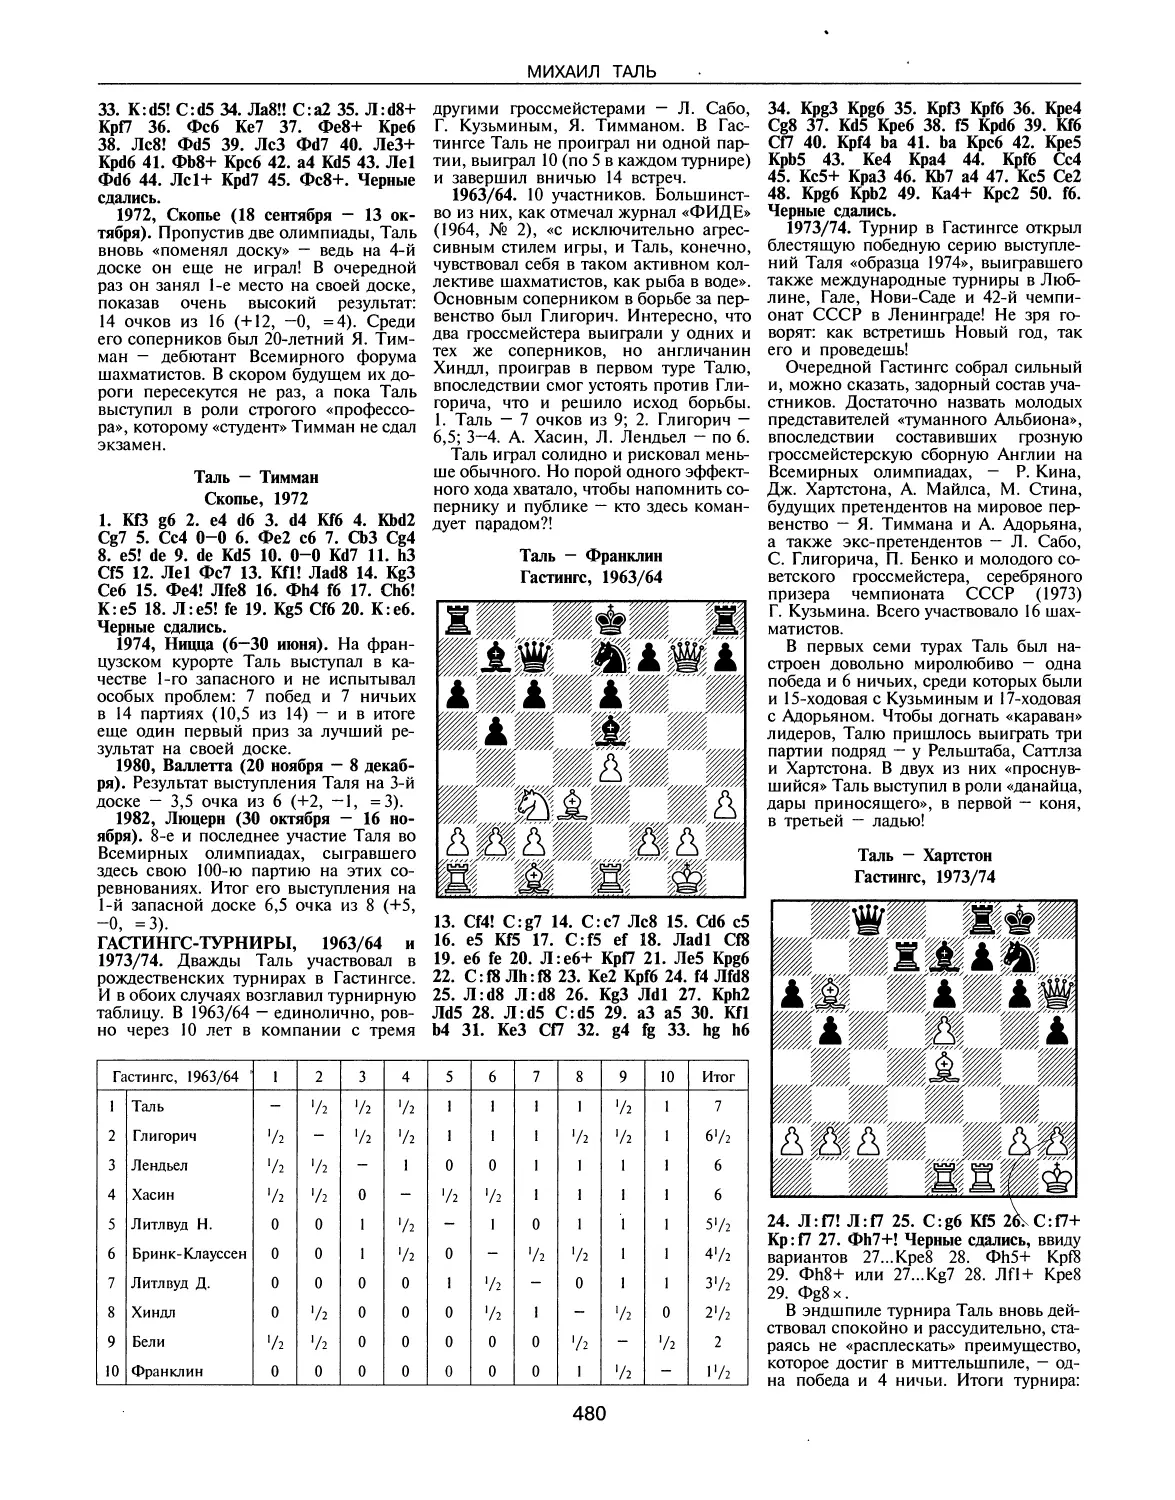 Гастингс-турниры, 1963/64 и 1973/74